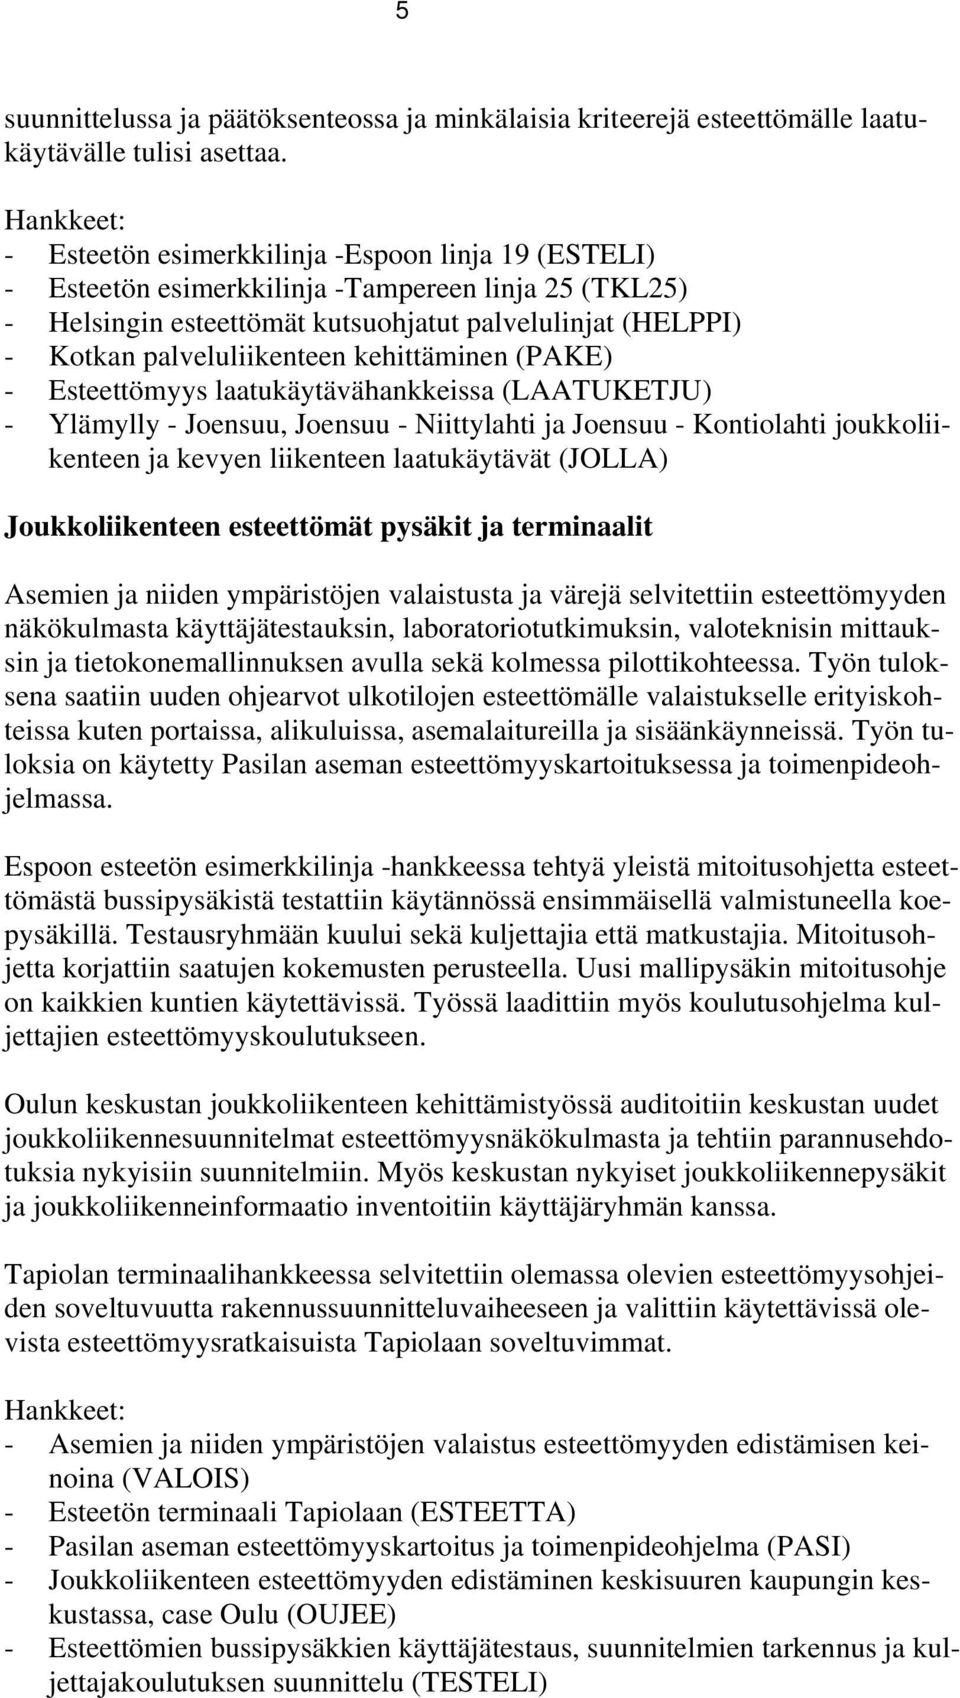 palveluliikenteen kehittäminen (PAKE) - Esteettömyys laatukäytävähankkeissa (LAATUKETJU) - Ylämylly - Joensuu, Joensuu - Niittylahti ja Joensuu - Kontiolahti joukkoliikenteen ja kevyen liikenteen